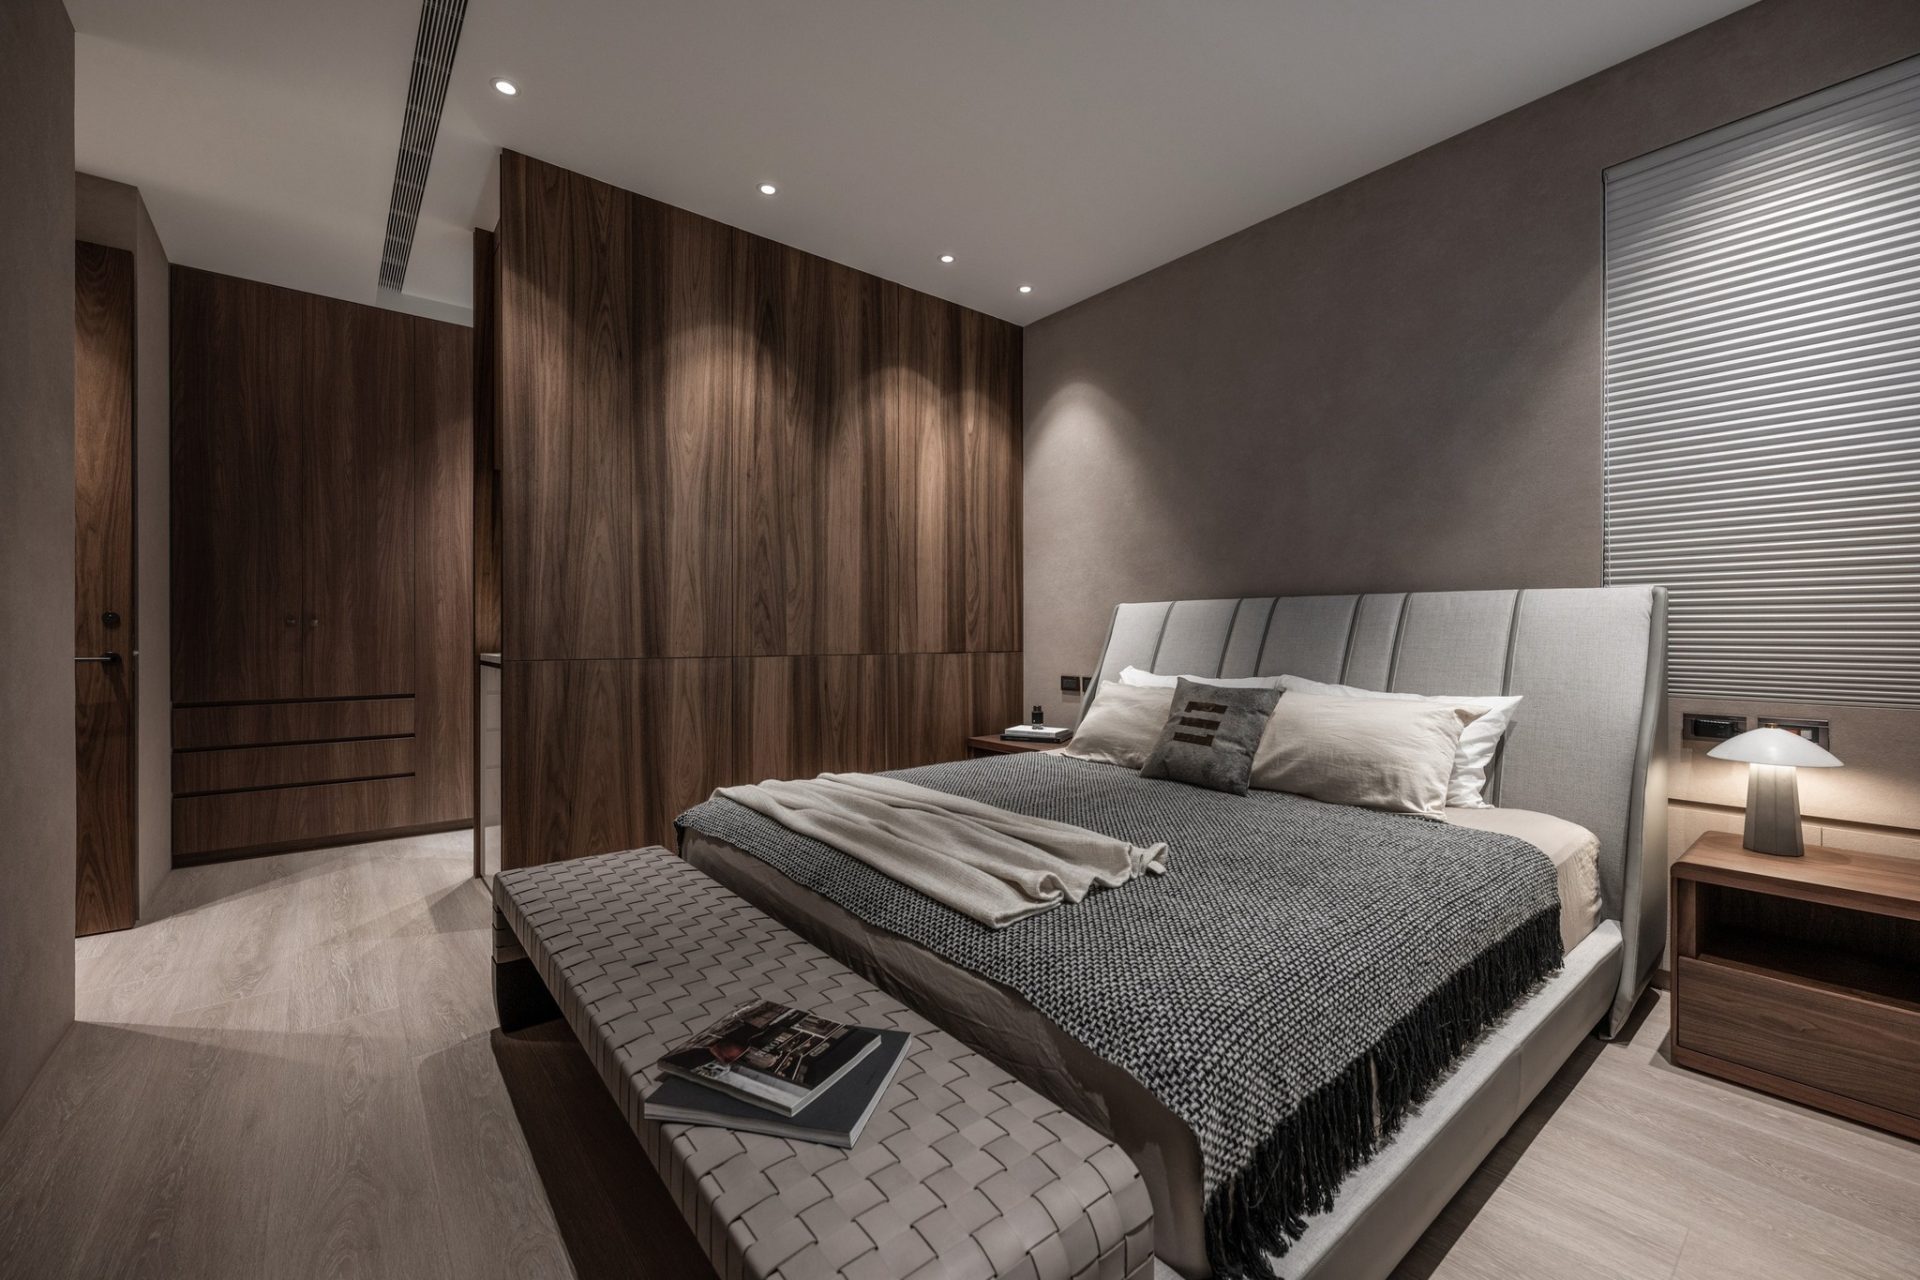 Mẫu thiết kế phòng ngủ tông màu xám tạo cảm giác huyền bí và mạnh mẽ